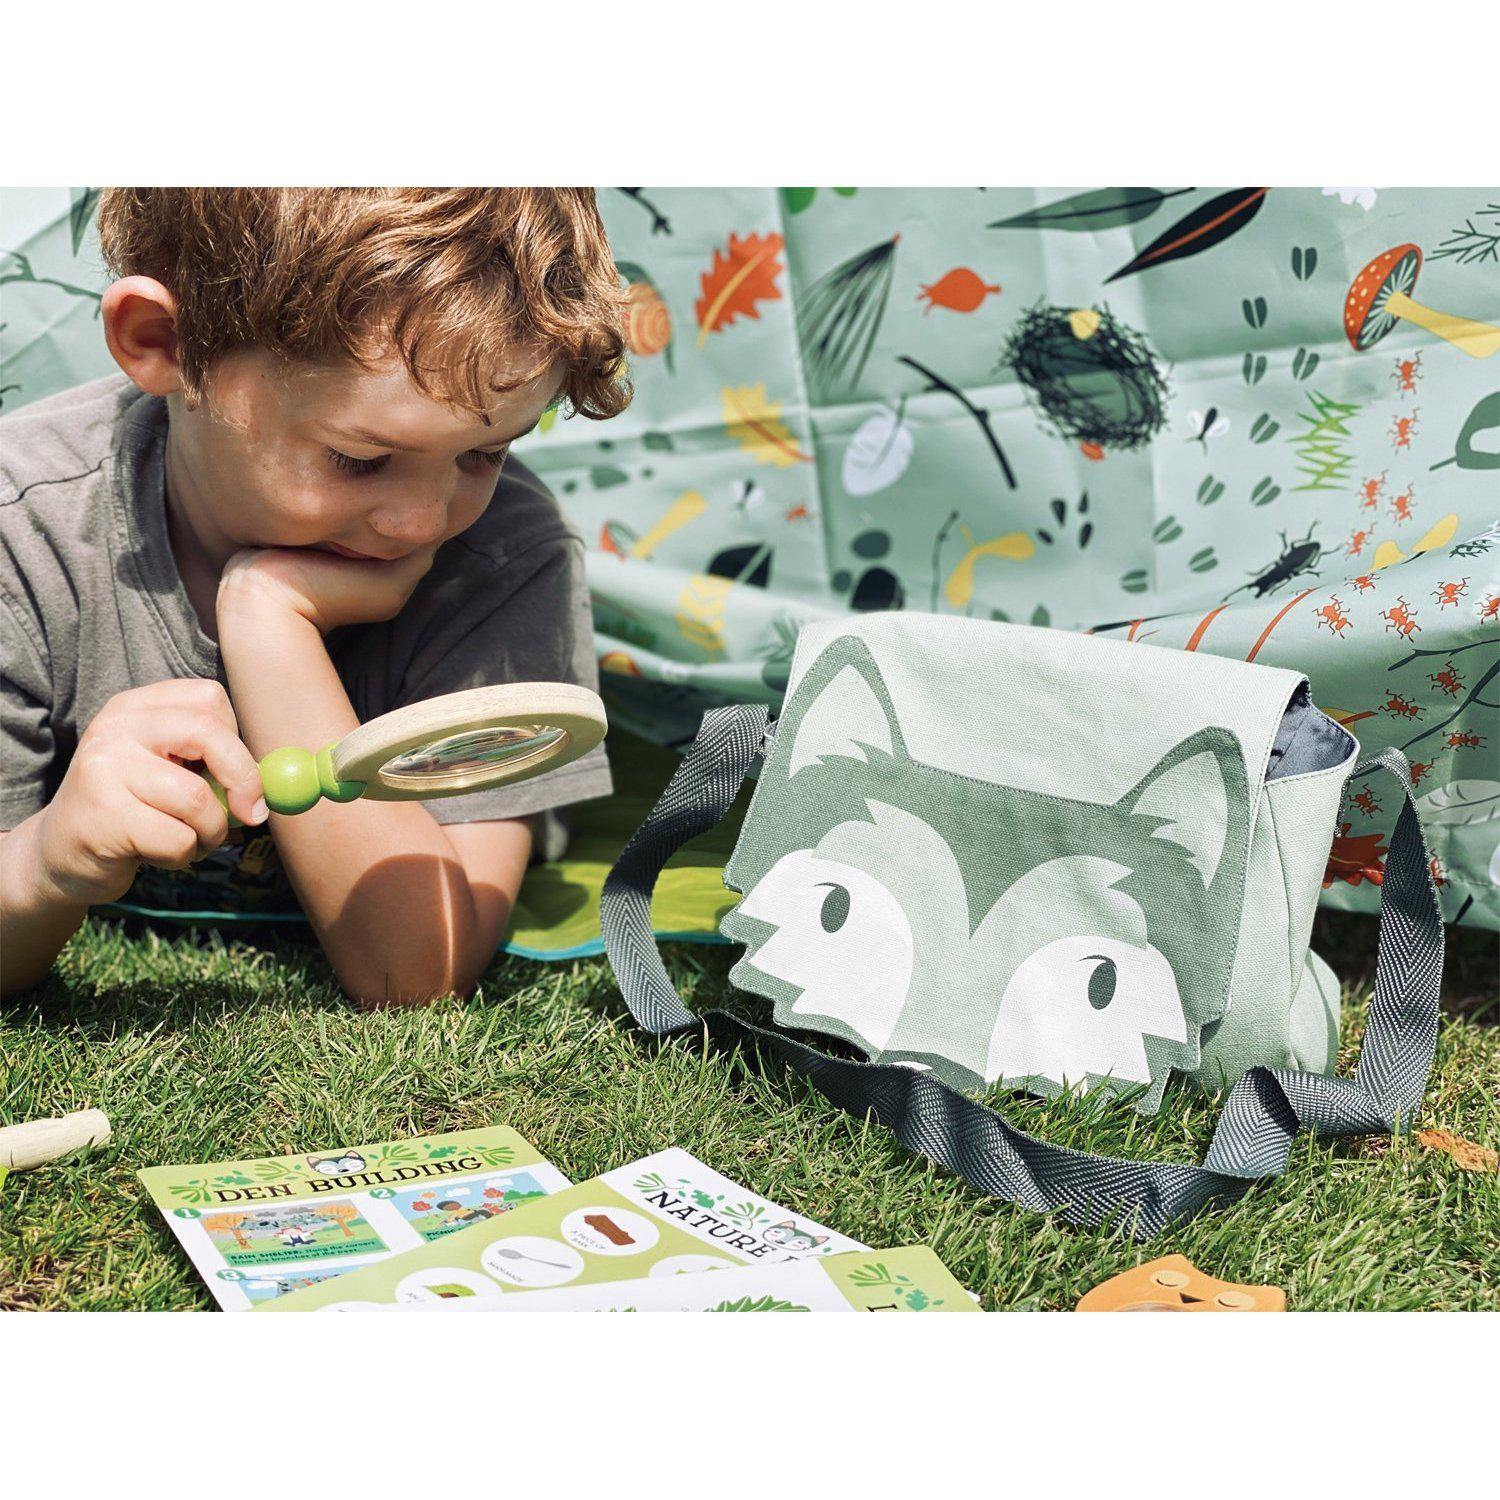 Erdei kiránduló készlet, prémium minőségű fából - Forest Trail Kit - 10 darab - Tender Leaf Toys-Tender Leaf Toys-8-Játszma.ro - A maradandó élmények boltja